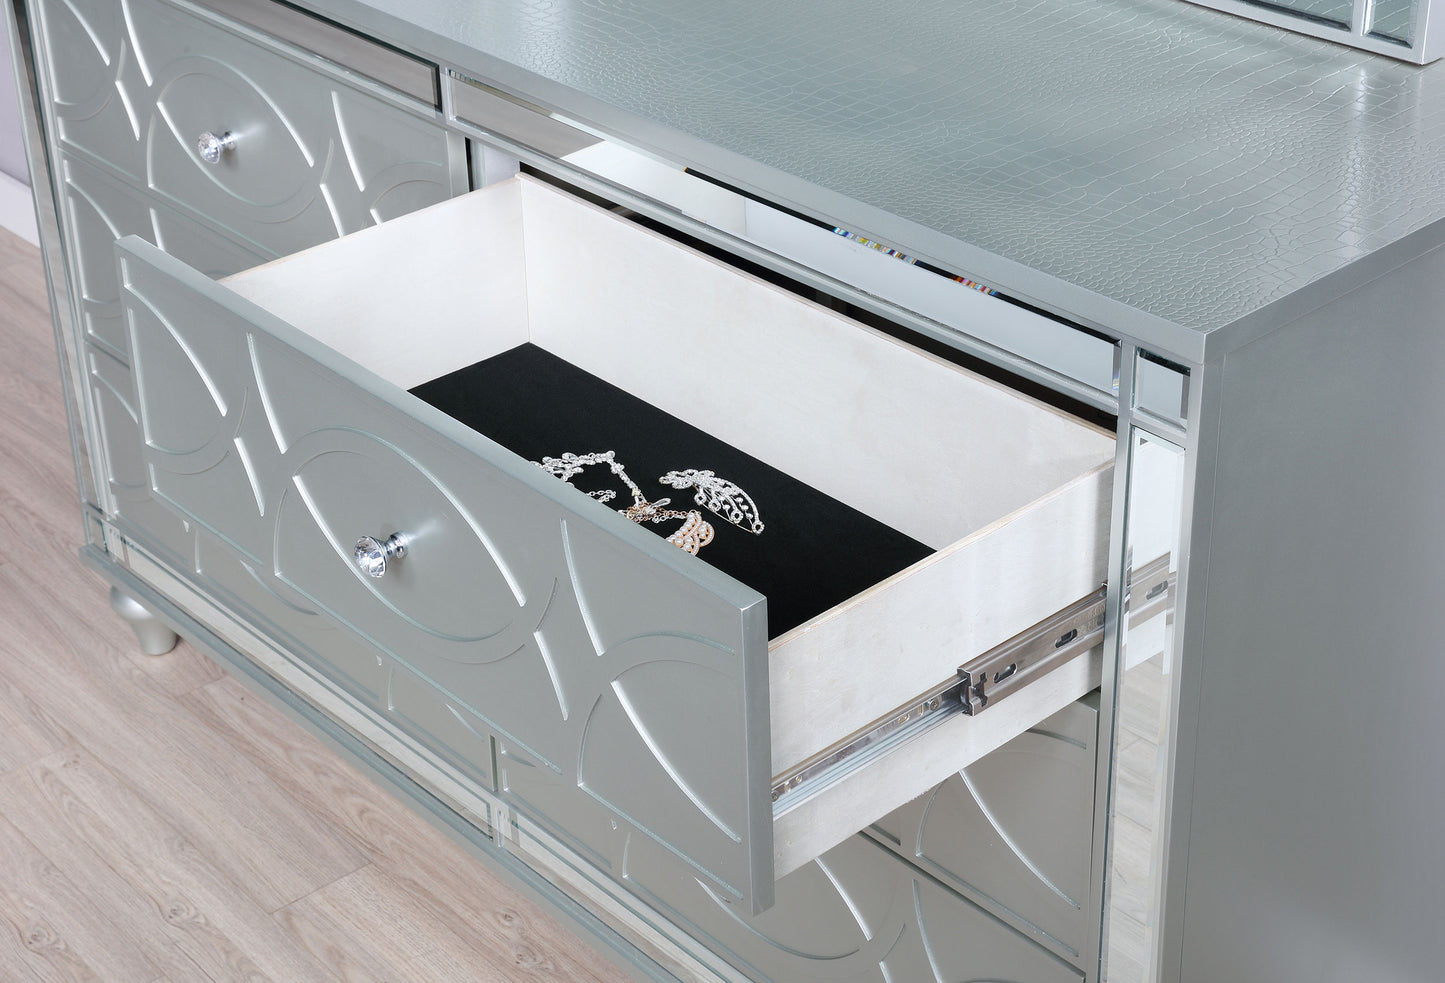 Gunnison 6-drawer Dresser with Mirror Silver Metallic